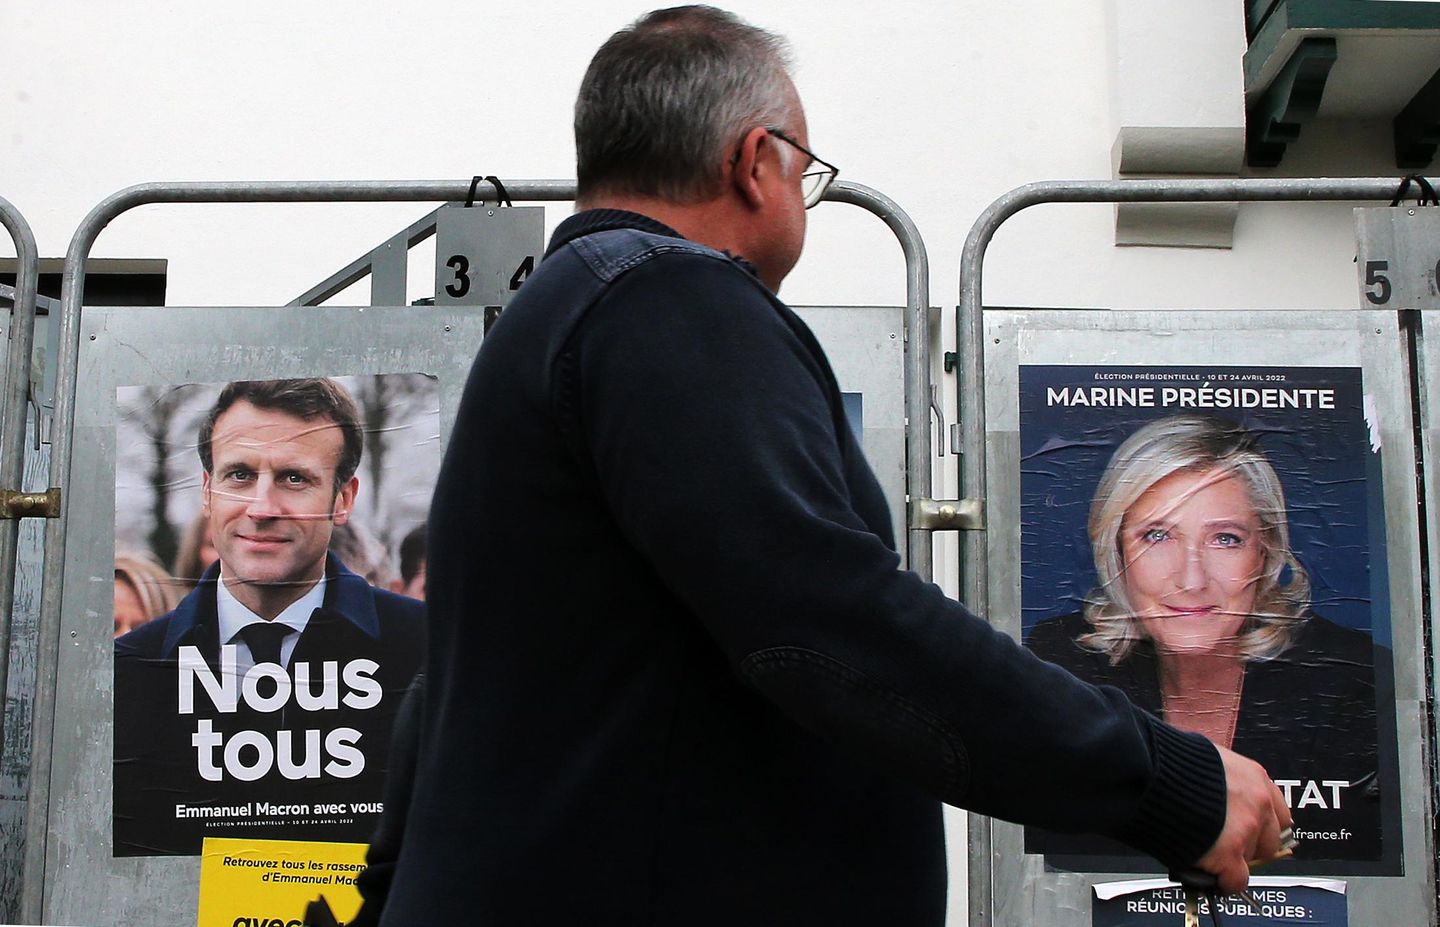 Fransa'da, Macron'un rakibi Marine Le Pen olarak tırnak yiyebilecek bir seçim tırmanıyor